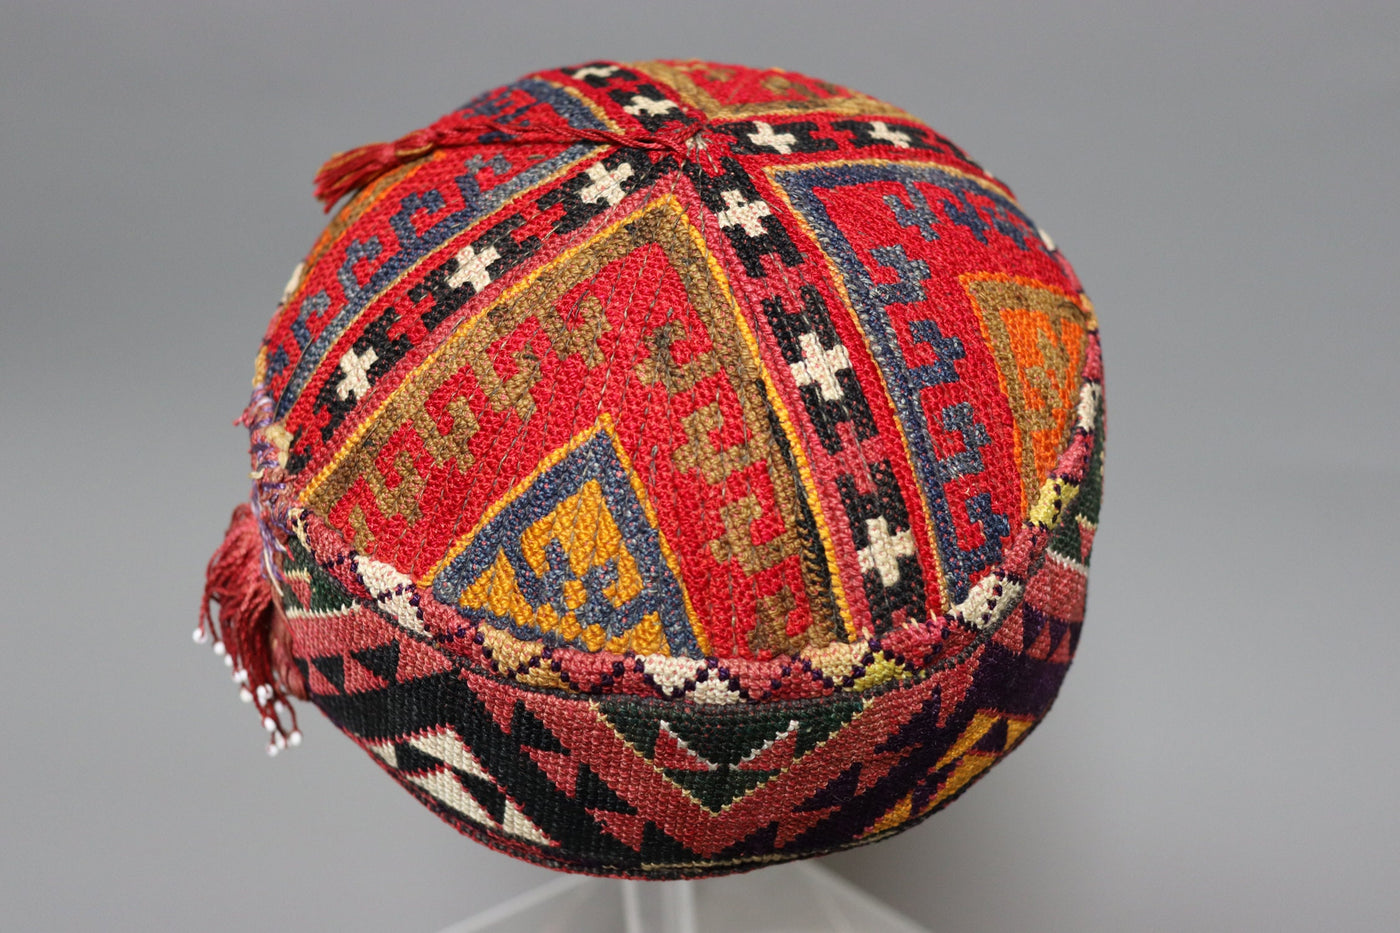 Antik handbestickte Mütze aus Afghanistan uzbekistan No:22/8  Orientsbazar   